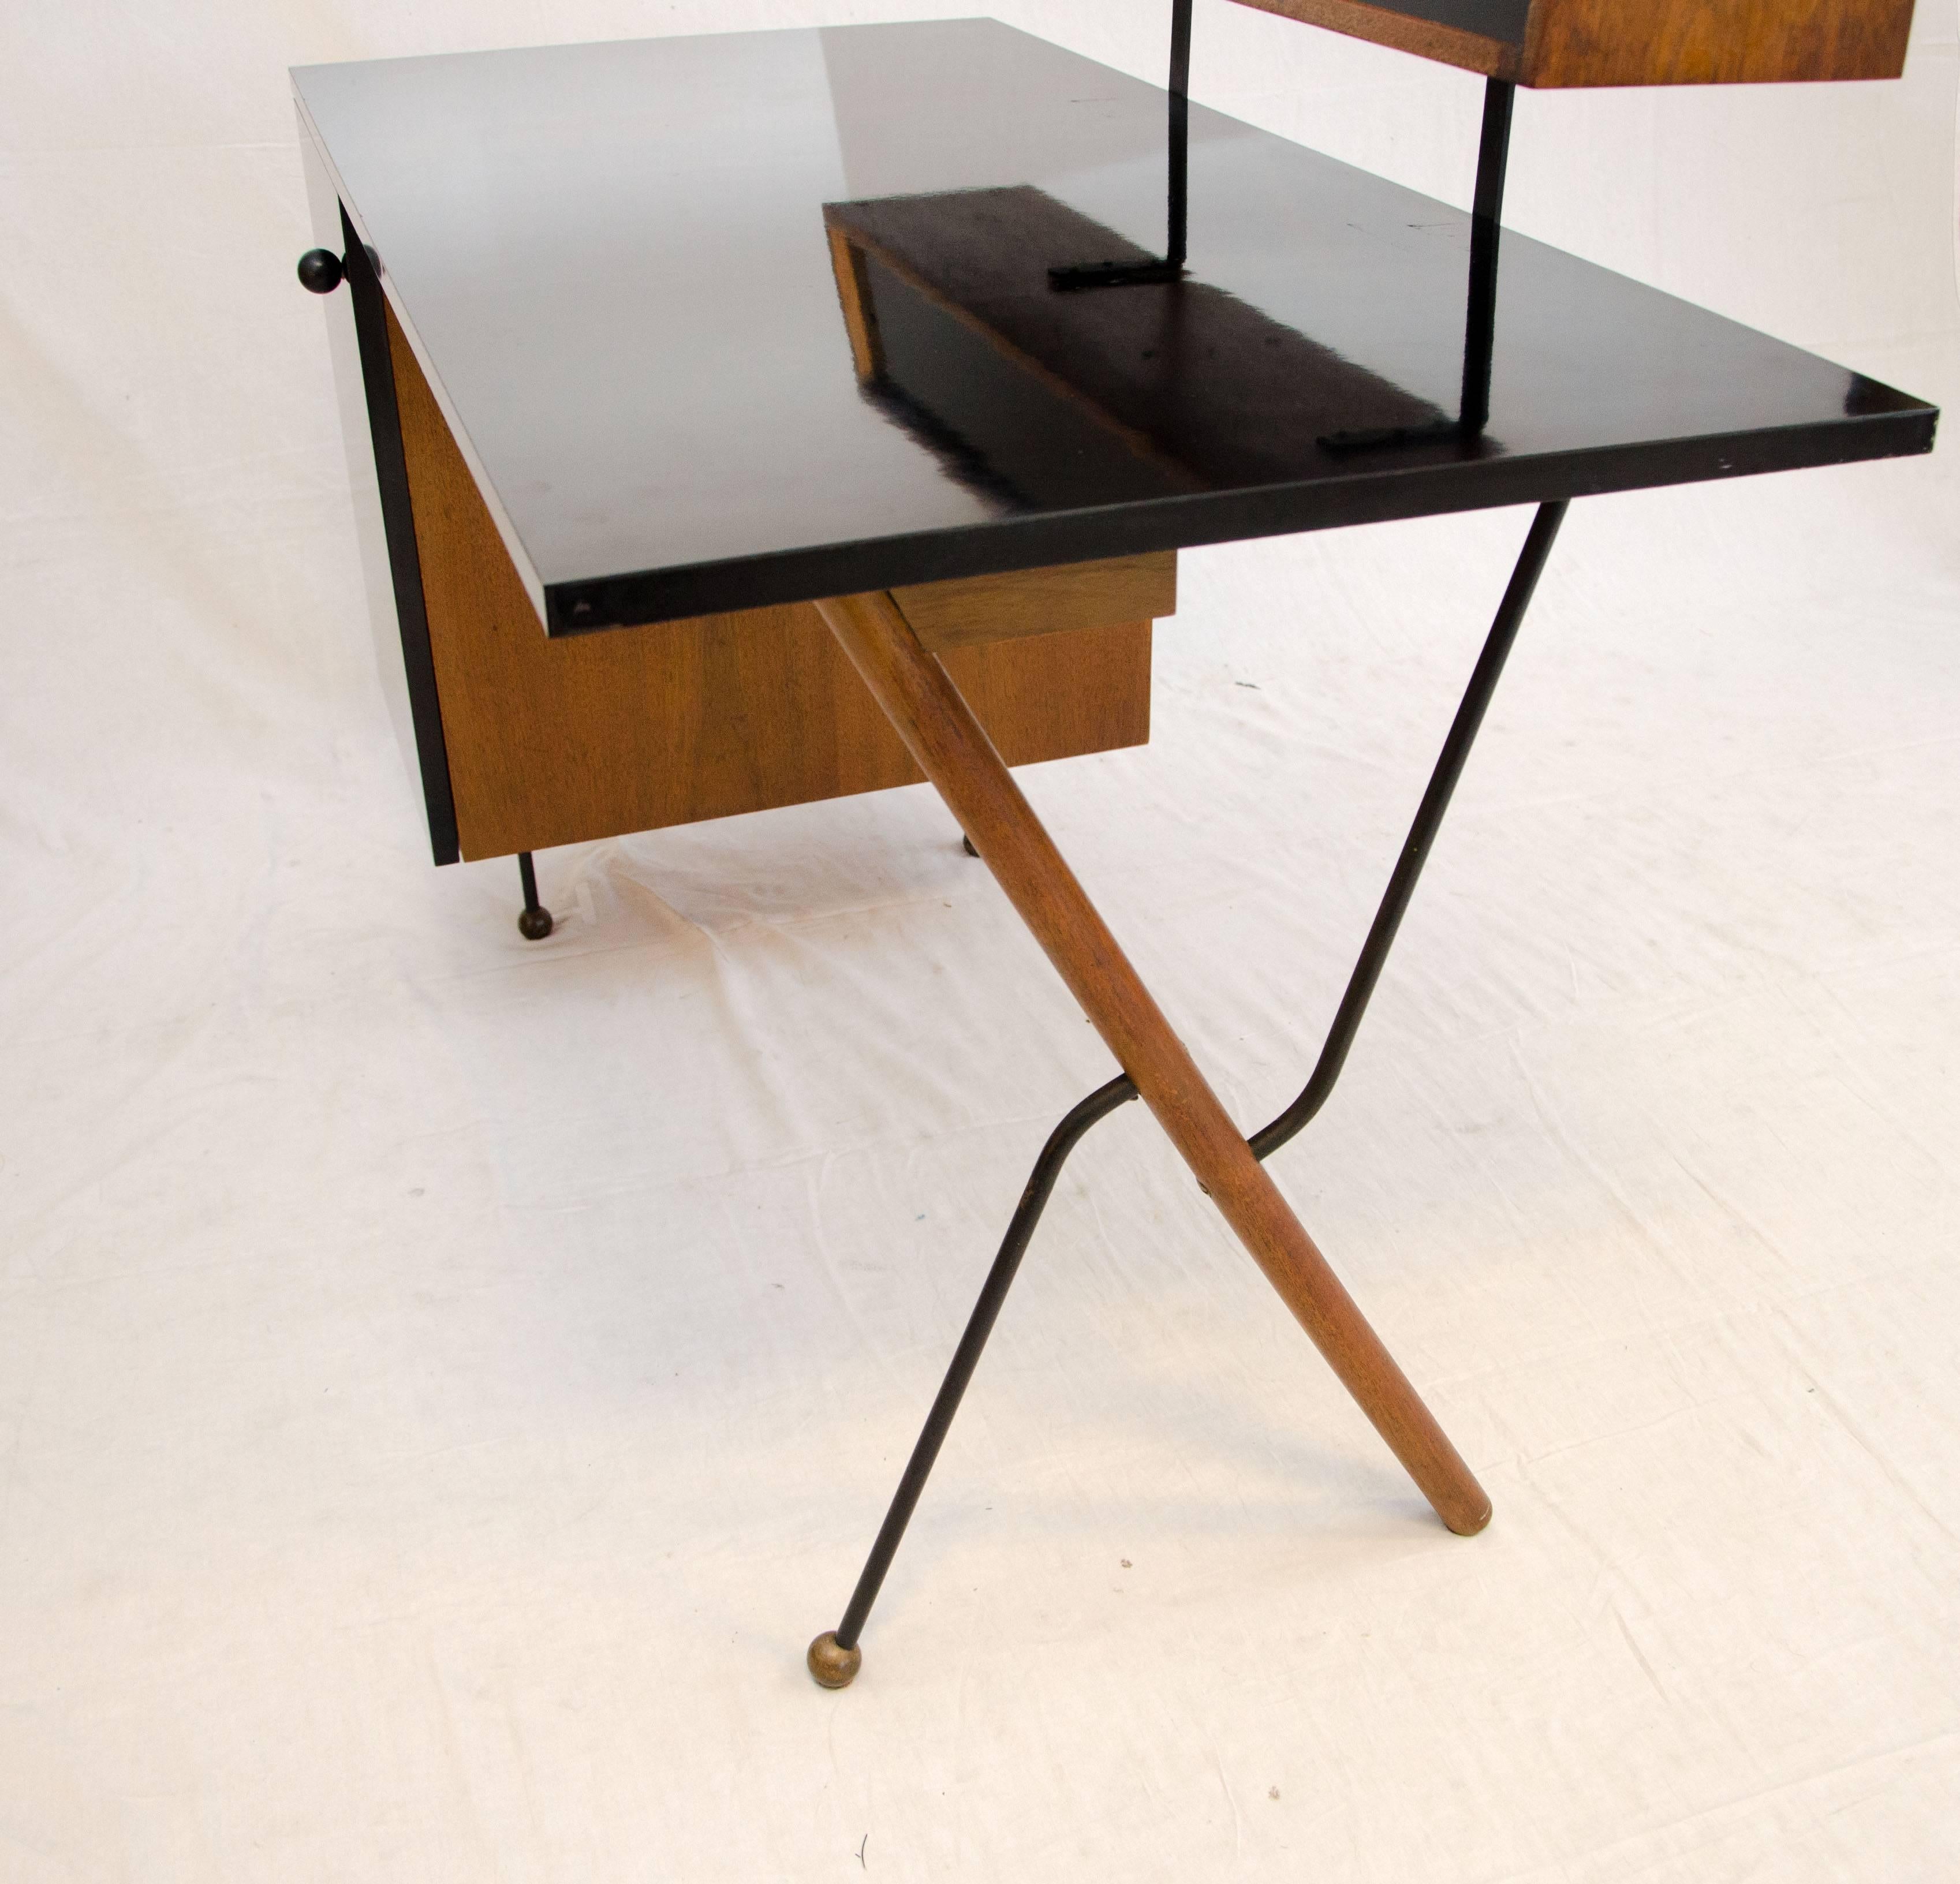 Rare Mid-Century Modern Desk by Greta Grossman for Glenn of California 2